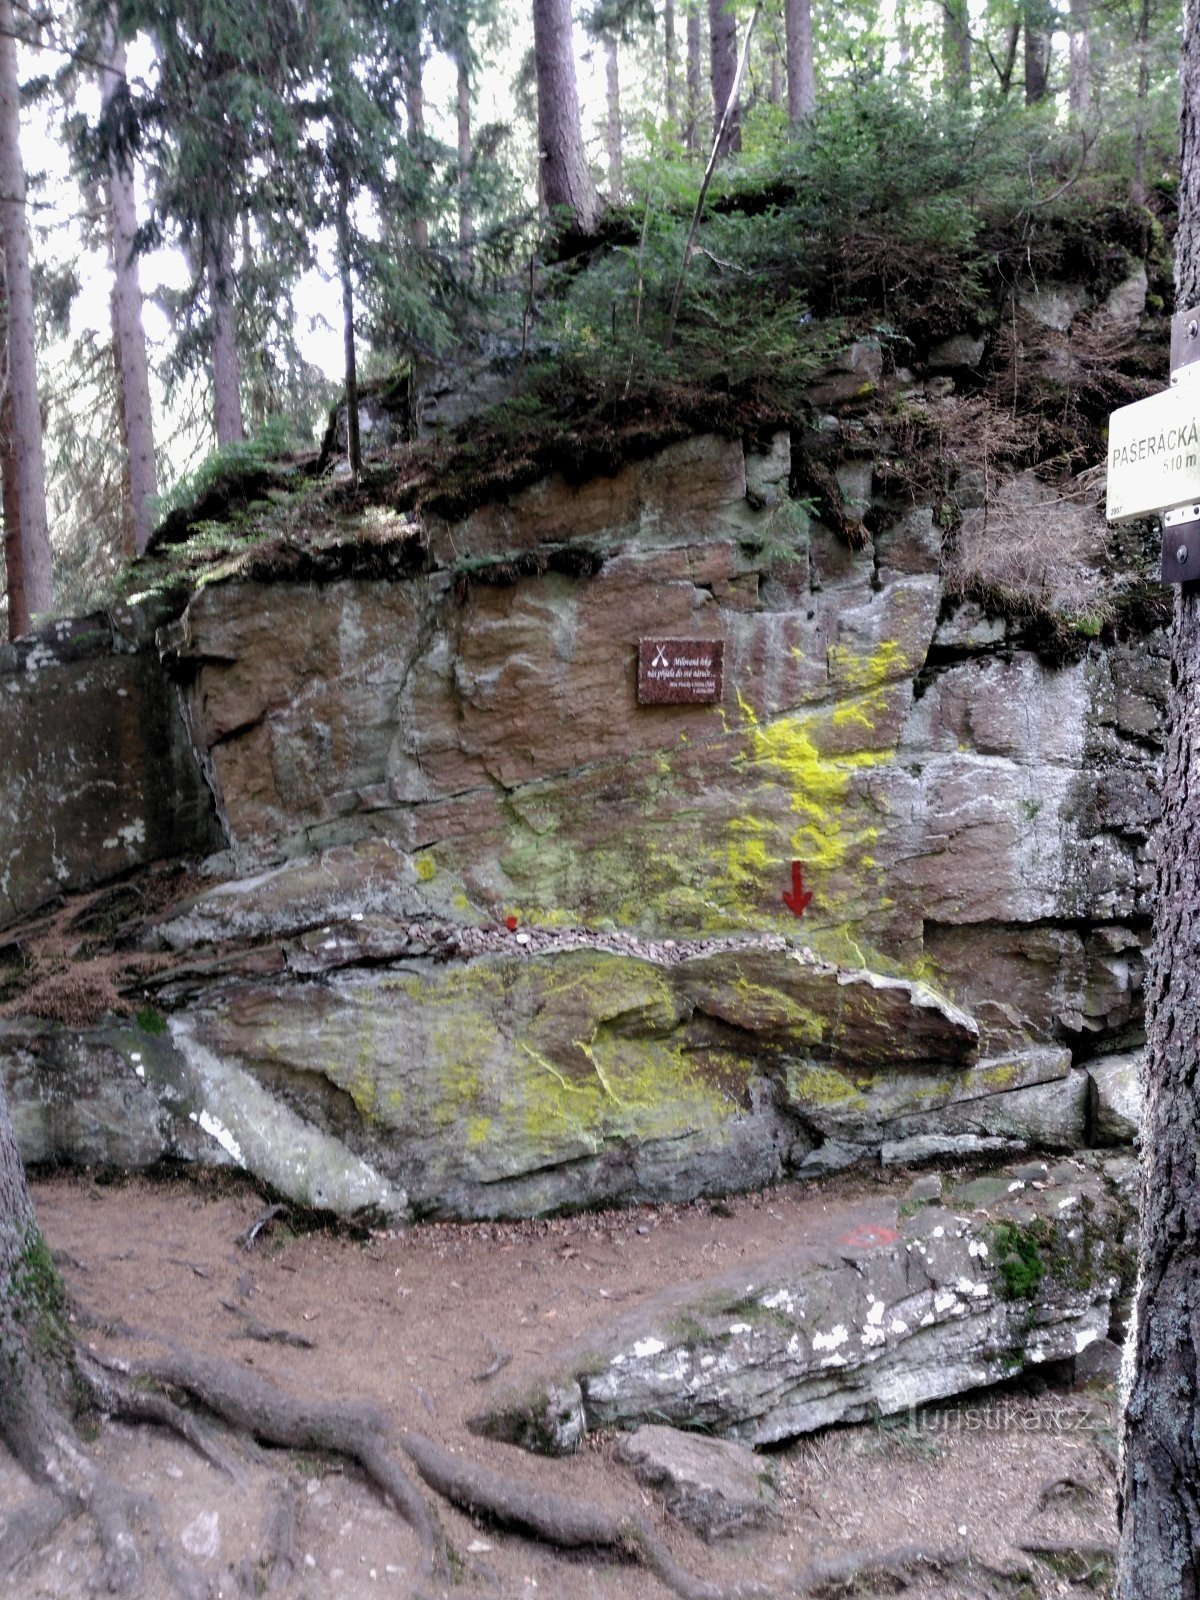 Pašerácká lávka 的岩石